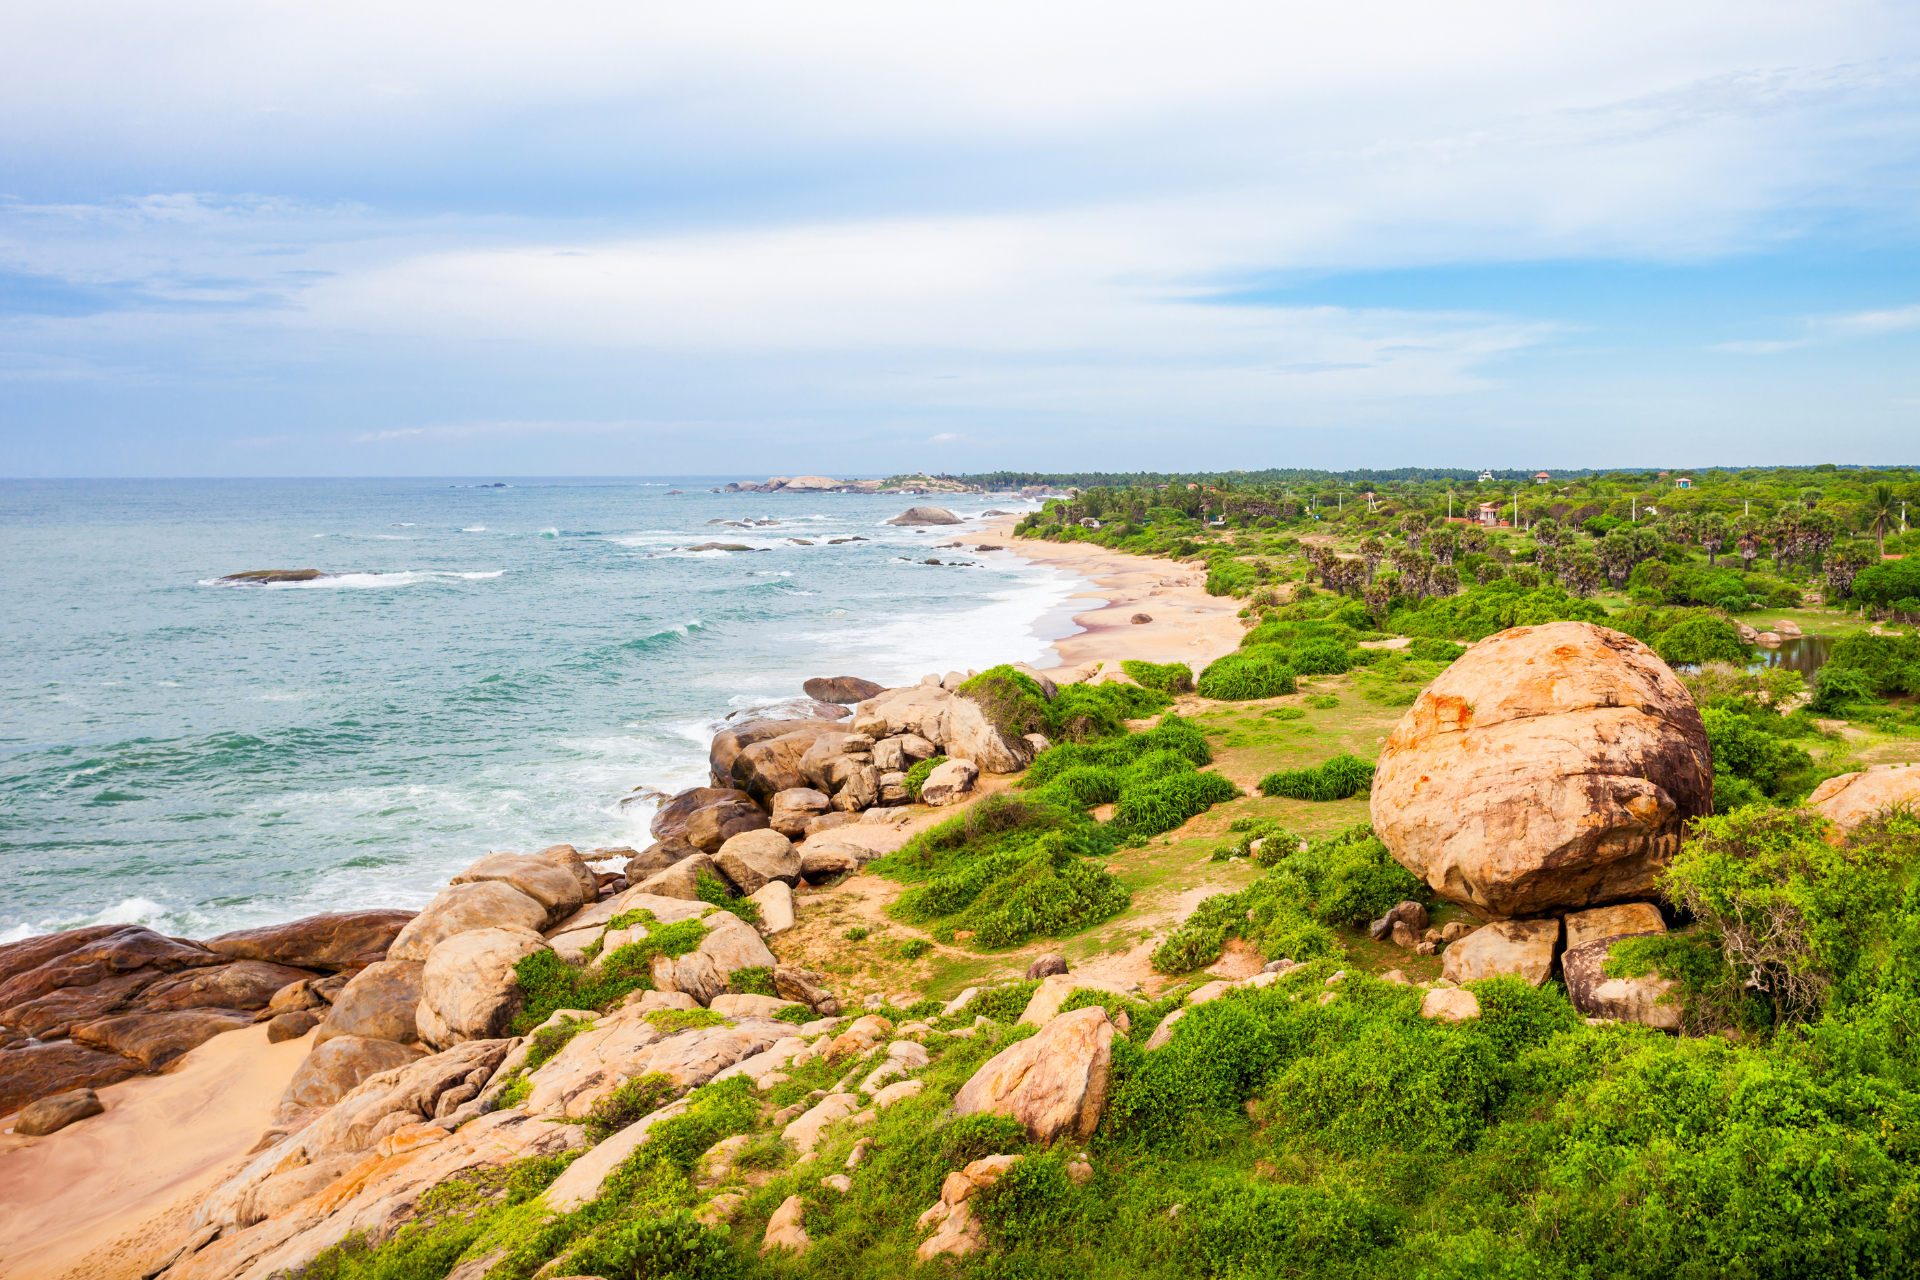 Rocky outcrops and greenery of Kirinda Beach in Sri Lanka